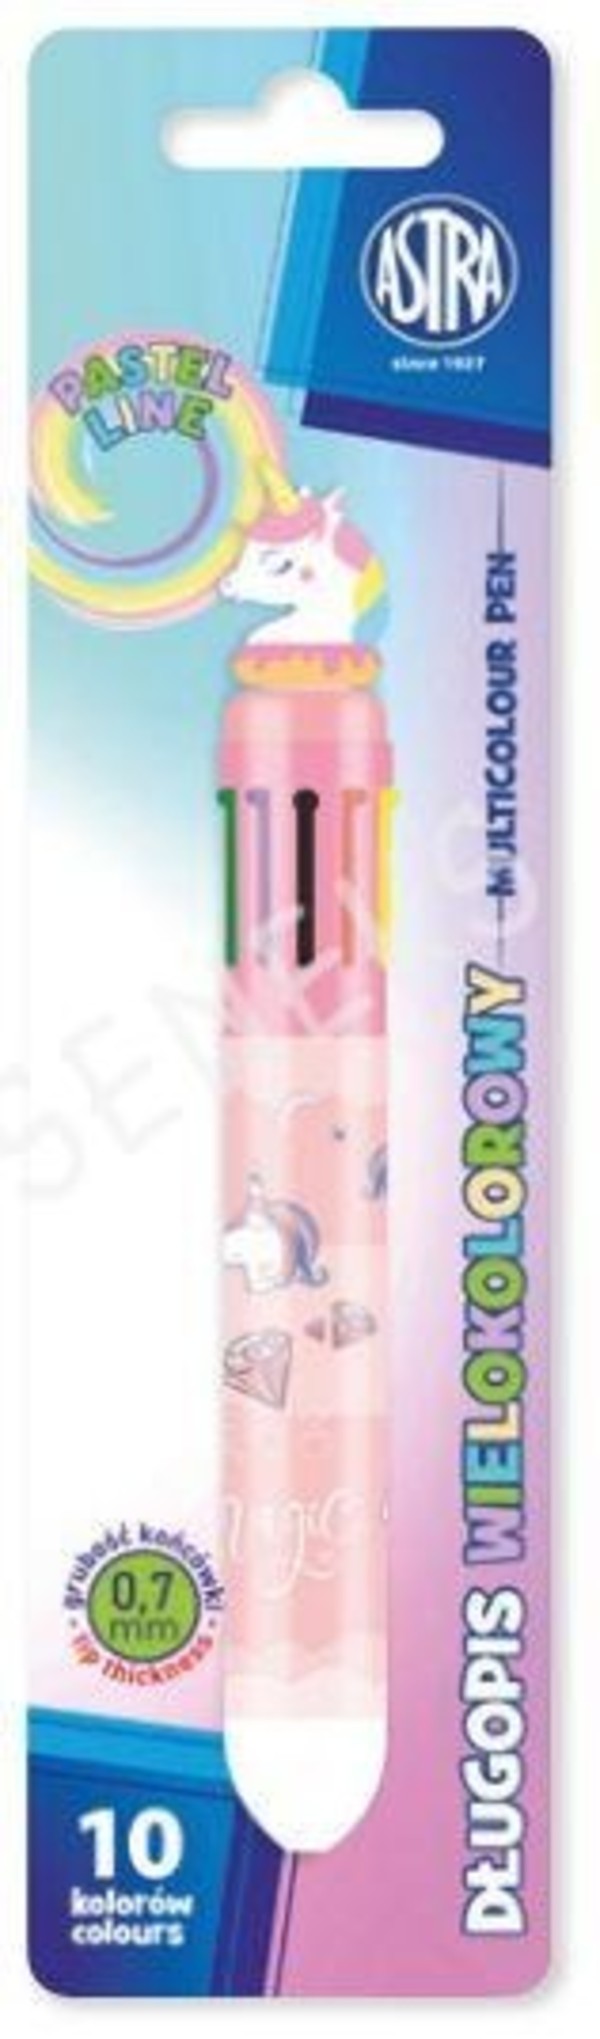 Długopis automatyczny astrapen pastel line unicorn wielokolorowy 10w1